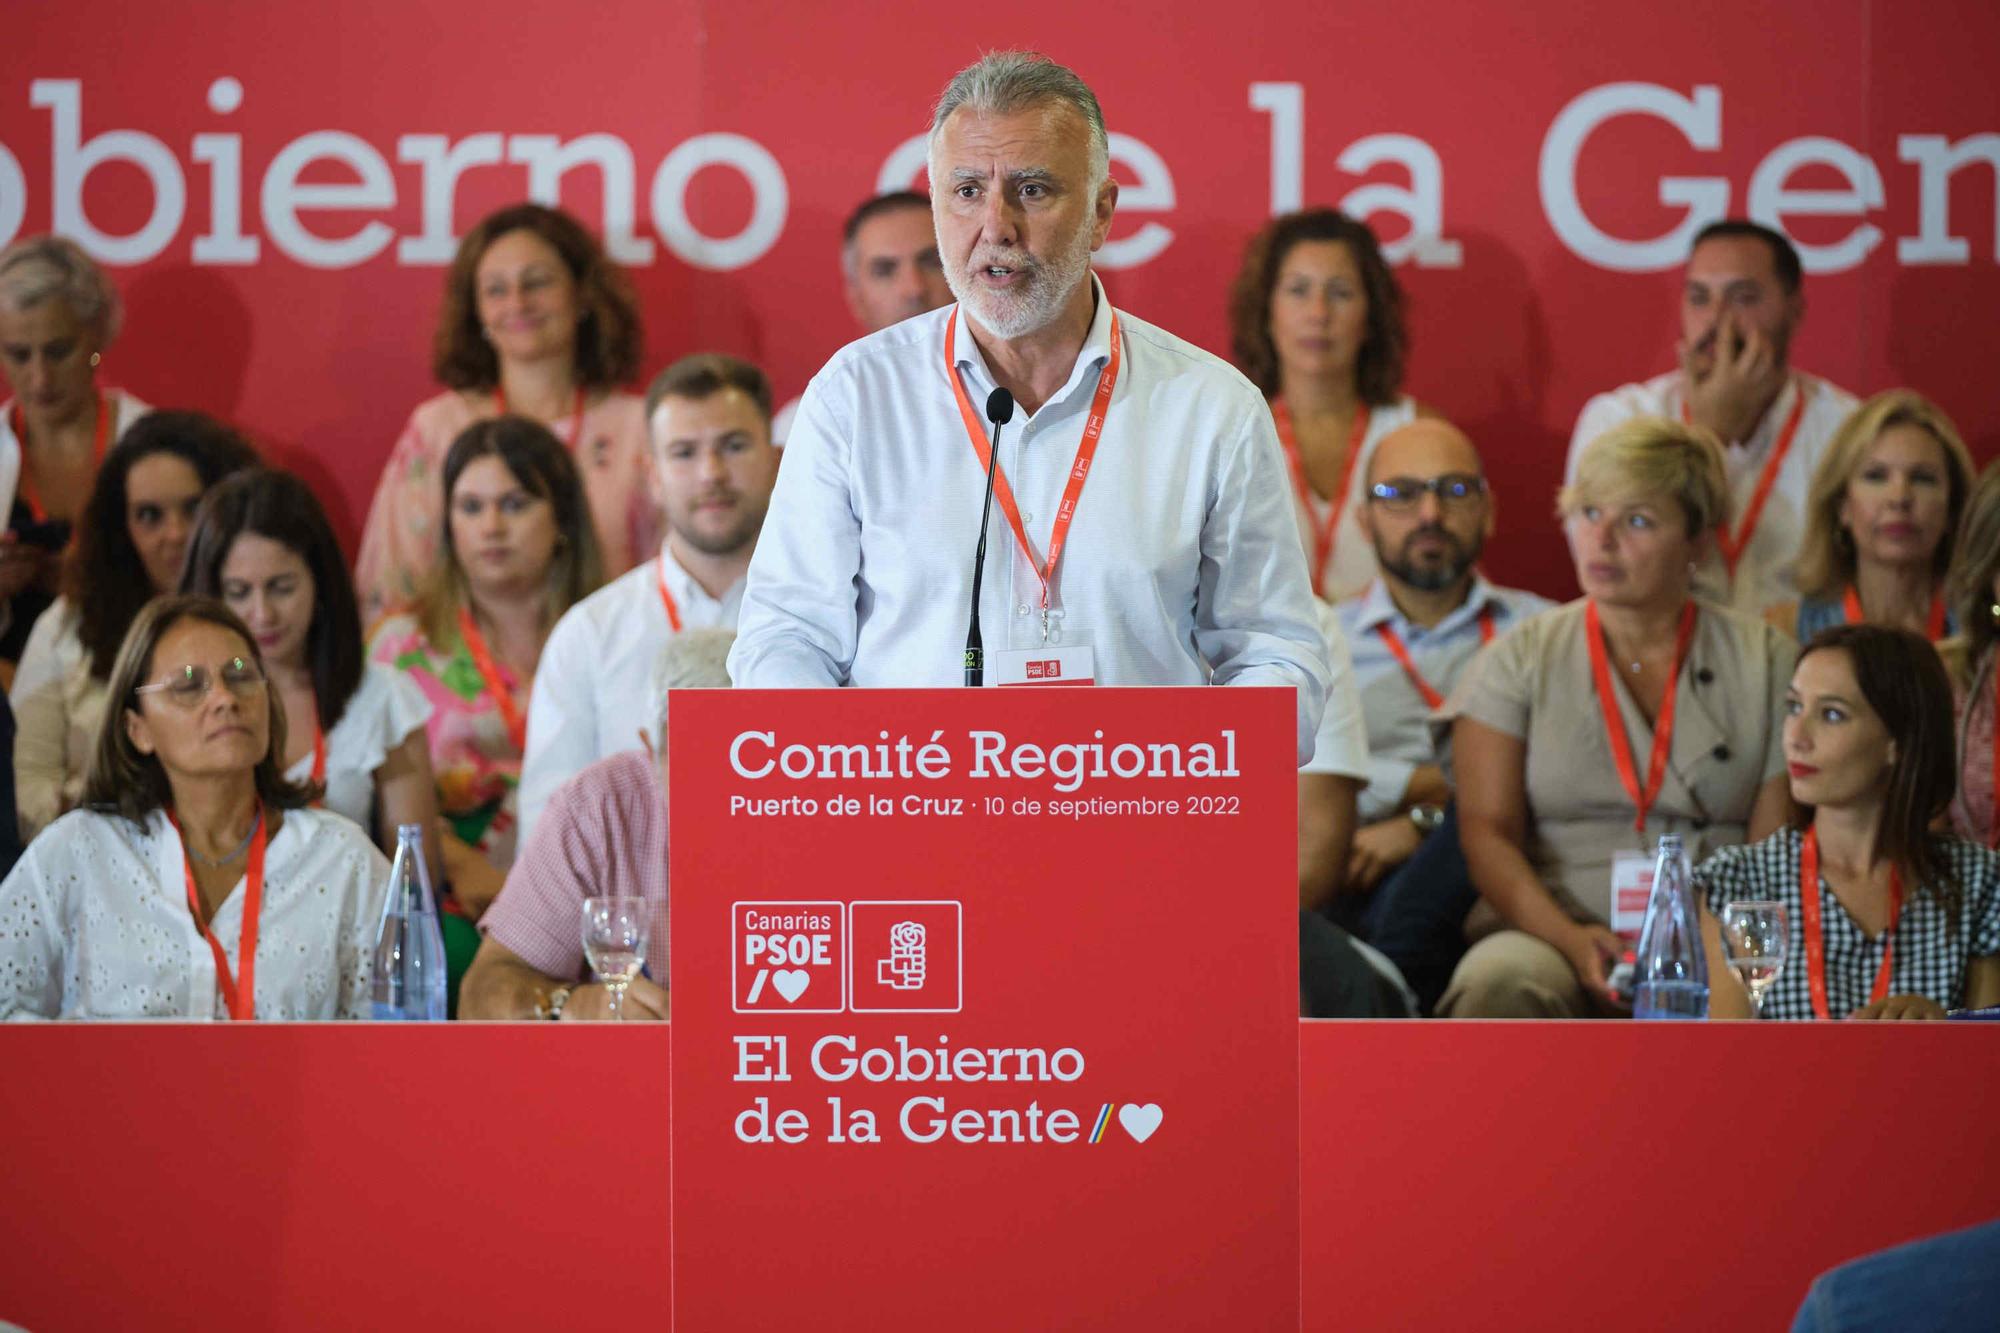 Comité Regional del PSOE celebrado en Puerto de la Cruz (Tenerife)